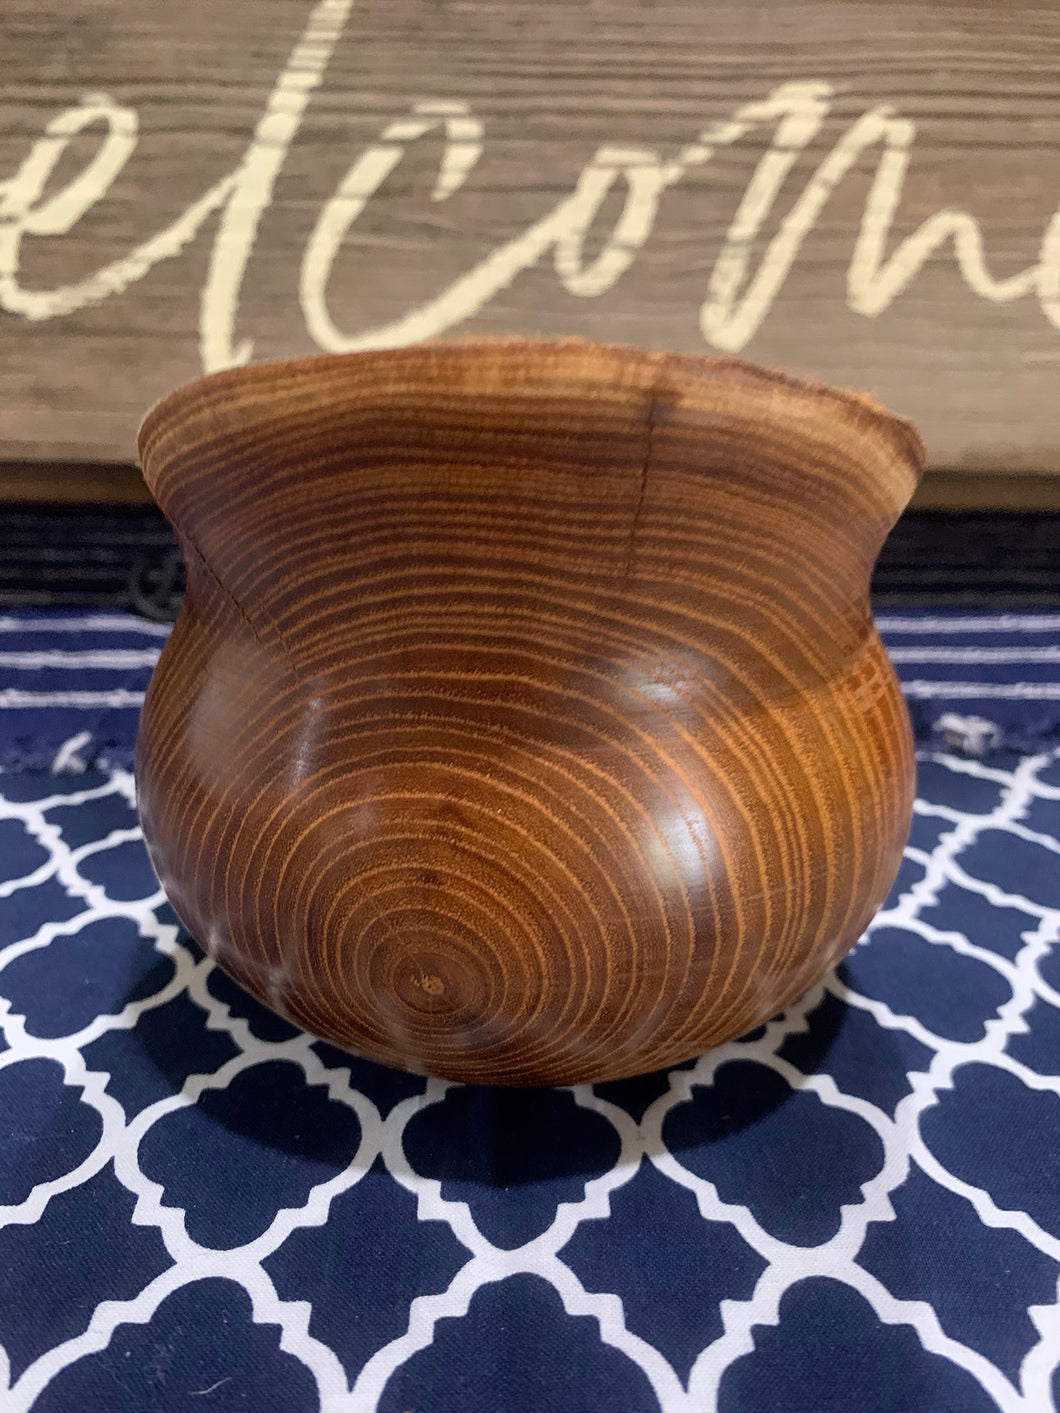 Carved Bowl // Live edge Osage Orange Bowl